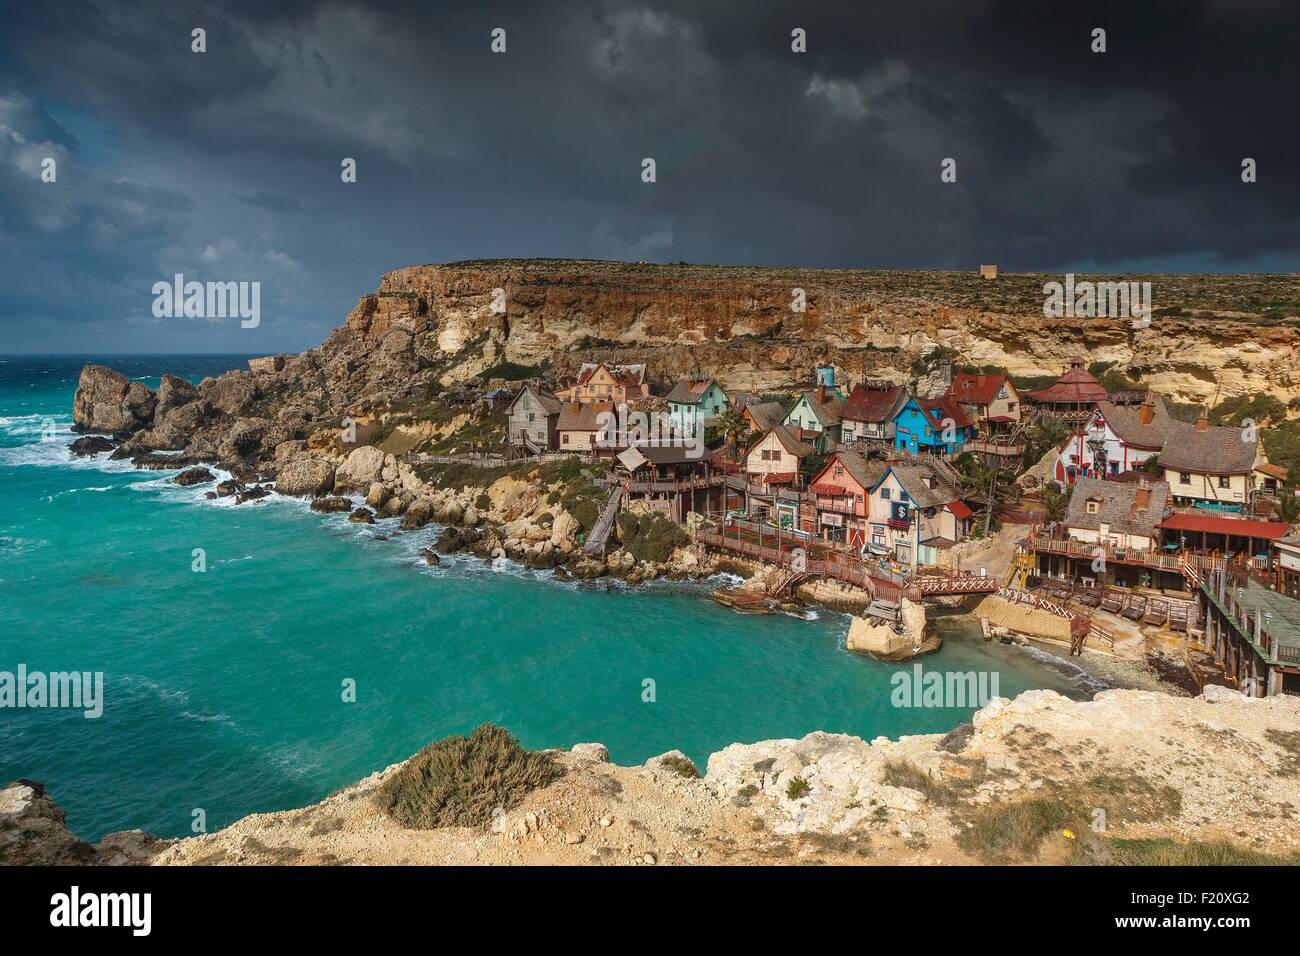 Malta, Mellieha, Anchor Bay, panorámica de la aldea de Popeye utilizado para el rodaje de una película, construido en la orilla del mar, bajo un cielo nublado Foto de stock